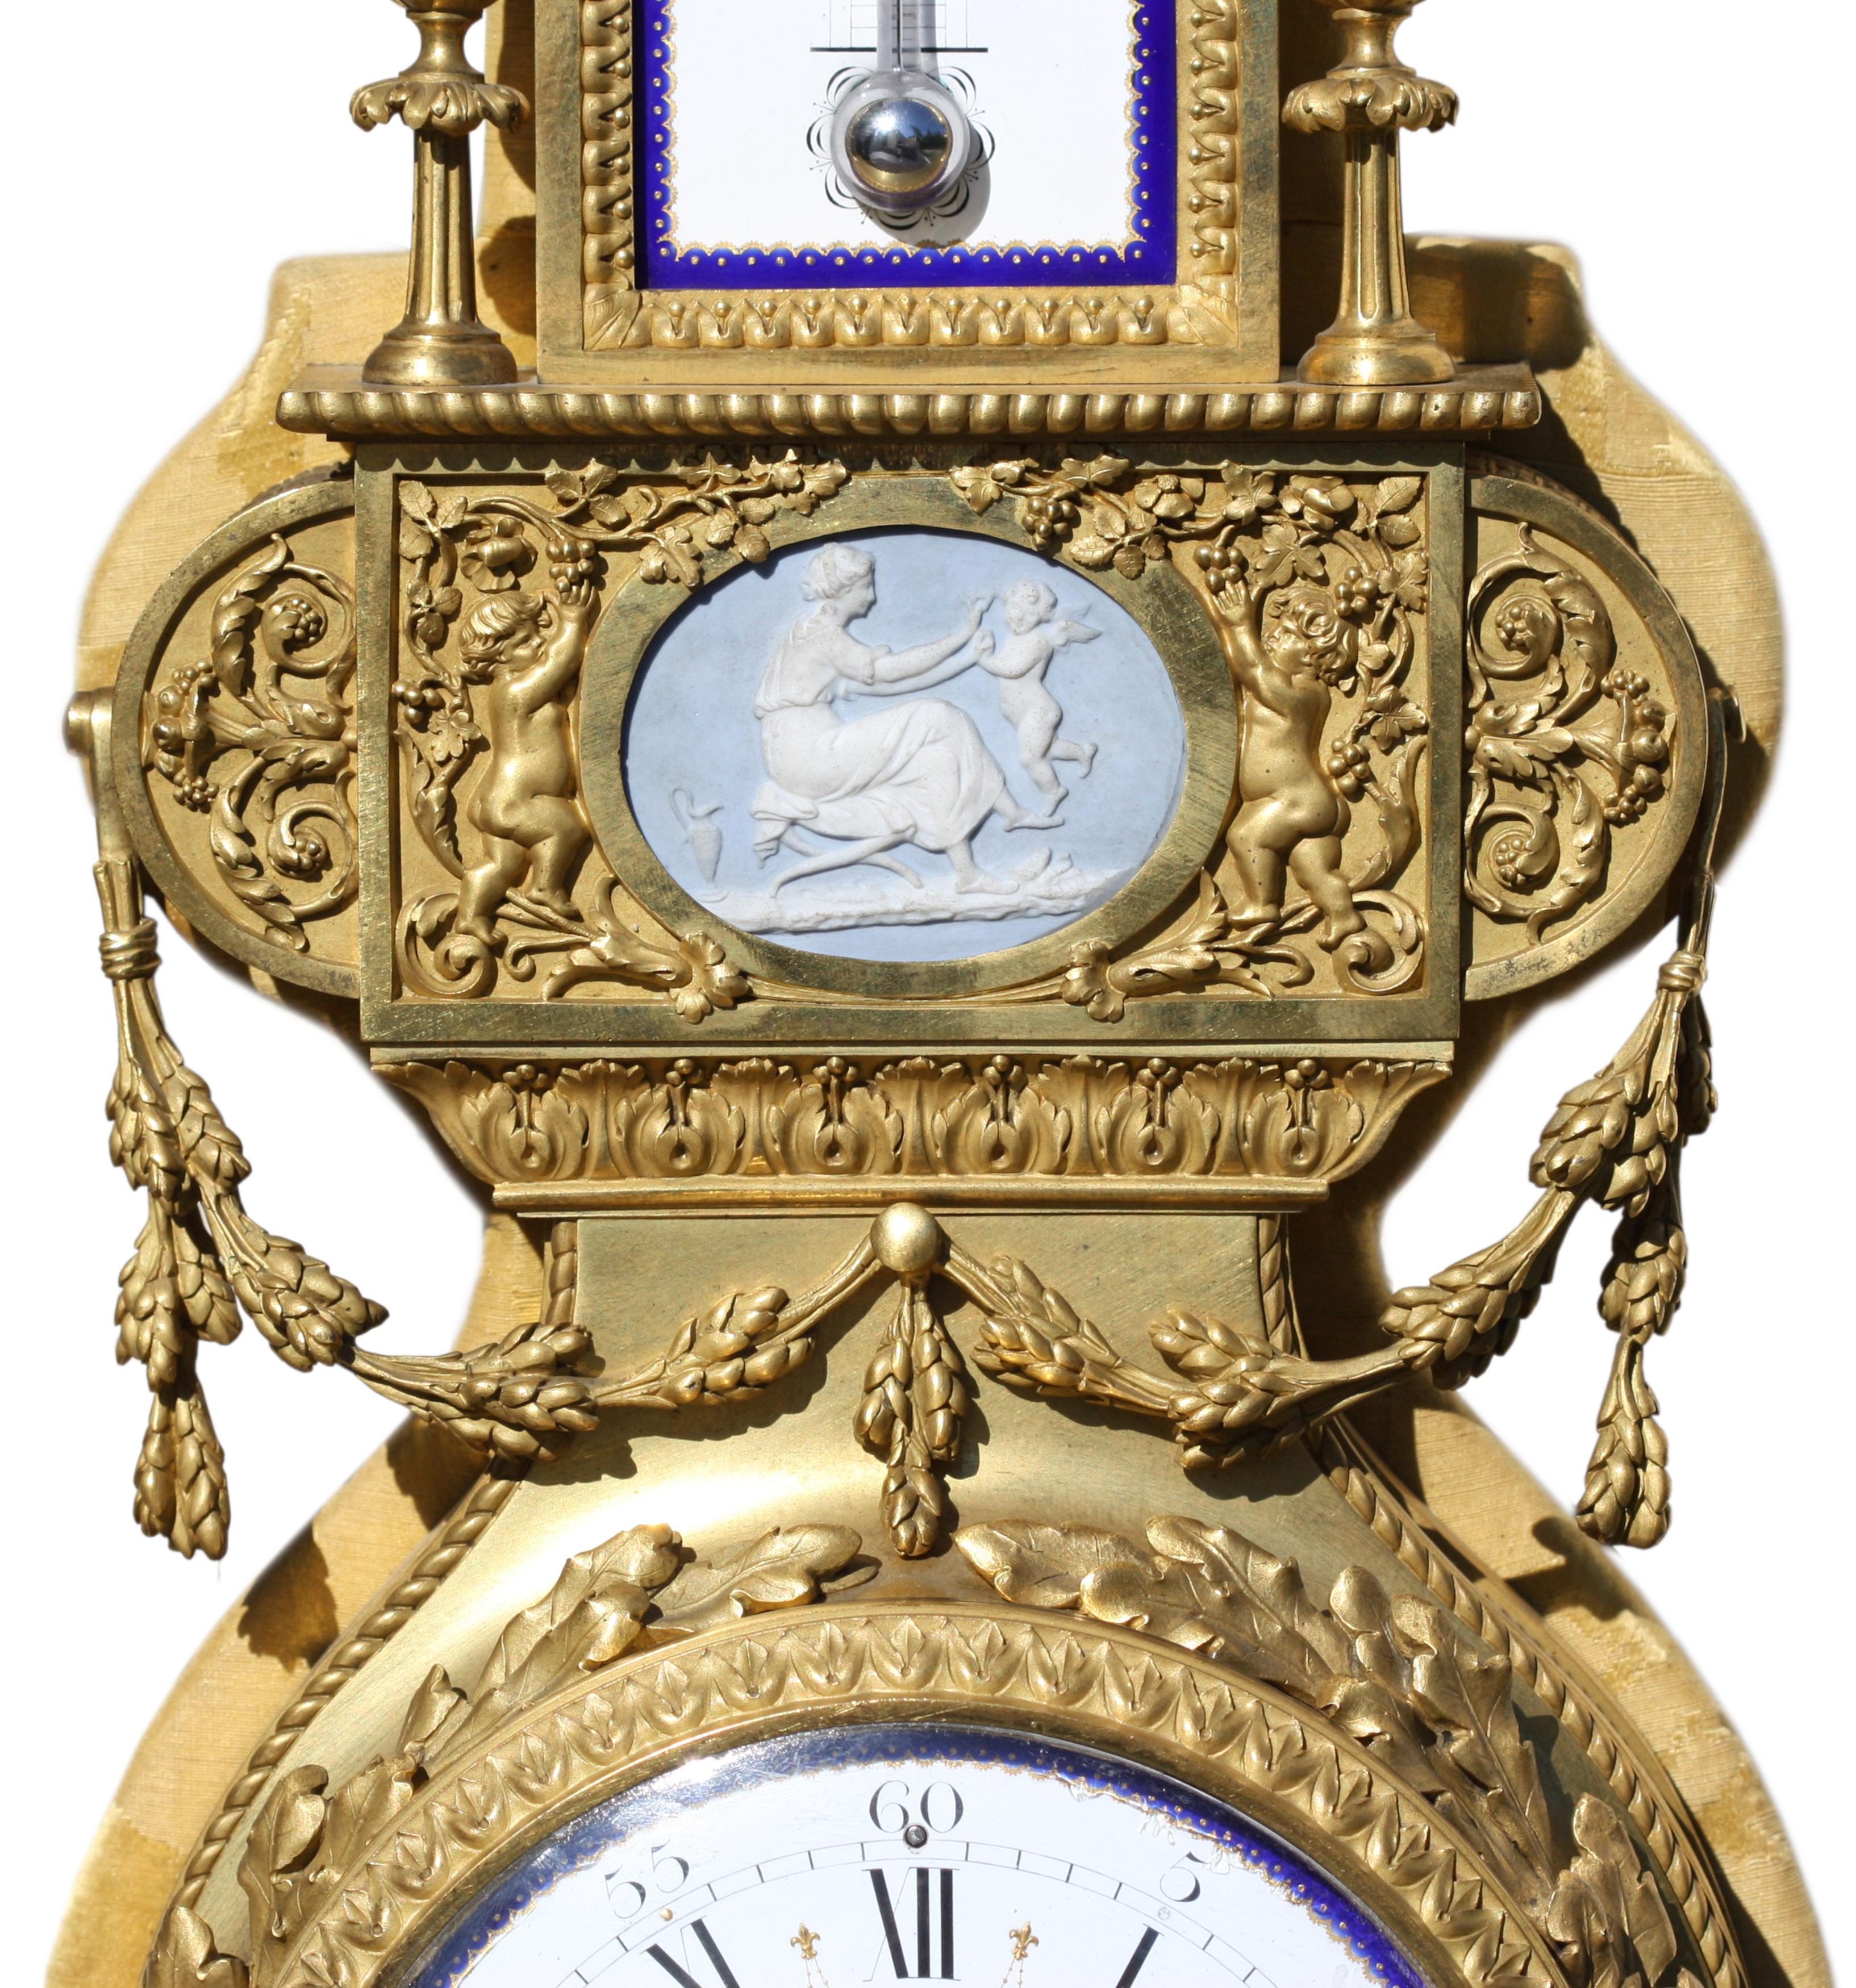 HENRY DASSON (1825-1896)
Porzellanmontierte Ormolu-Kartelluhr im Louis-XVI-Stil und dazu passendes Barometer von Henry Dasson, Paris 1882 und 1878.
Beide sind mit Thermometern ausgestattet, eines mit Celsius- und eines mit Reaumur-Skala, die die